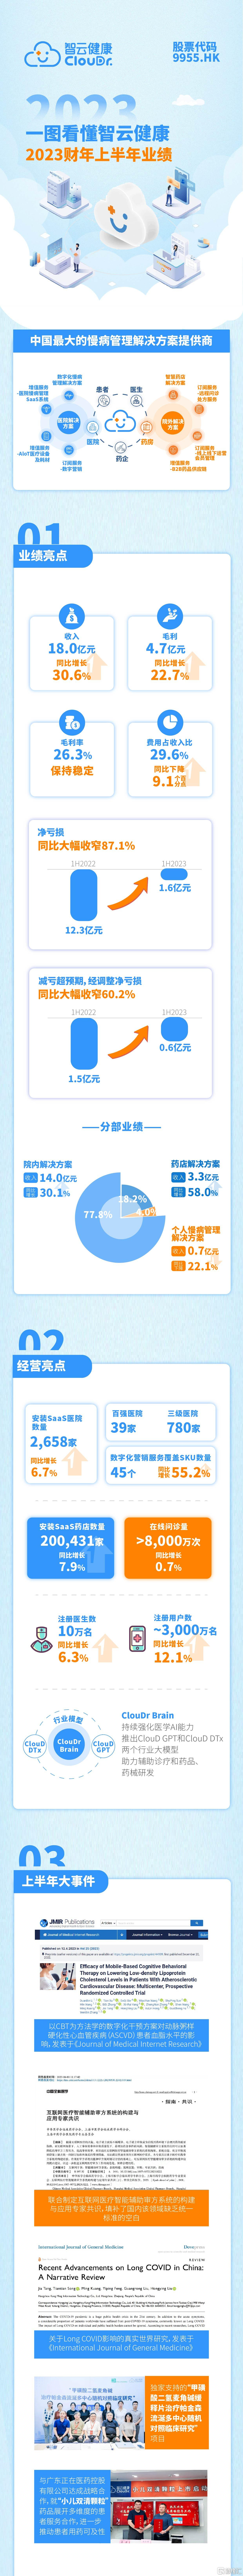 一图看懂智云健康(09955.HK)2023财年上半年业绩